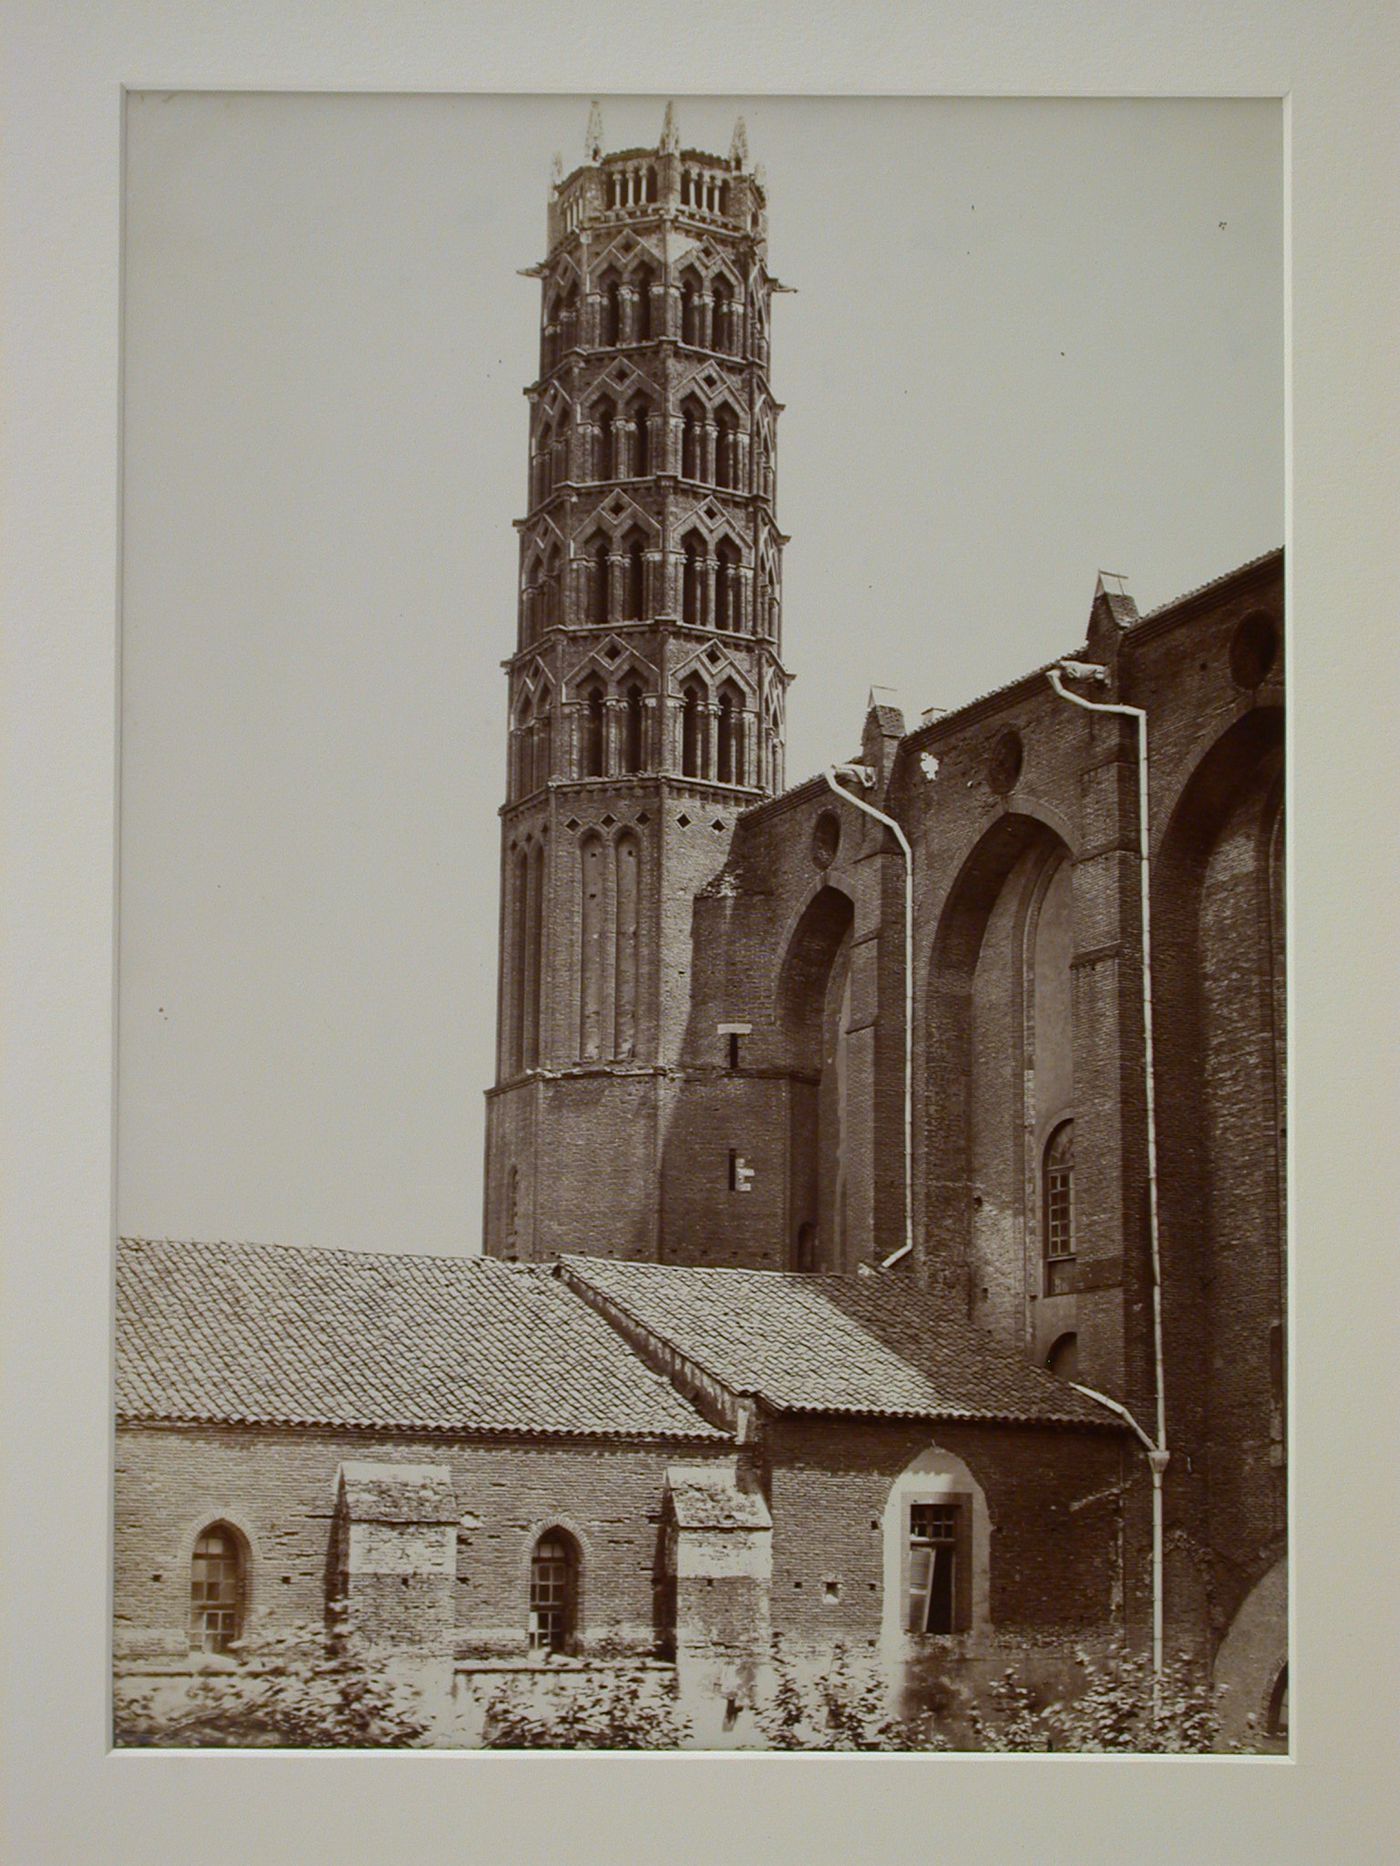 Église des Jacobins, tower, Toulouse, France